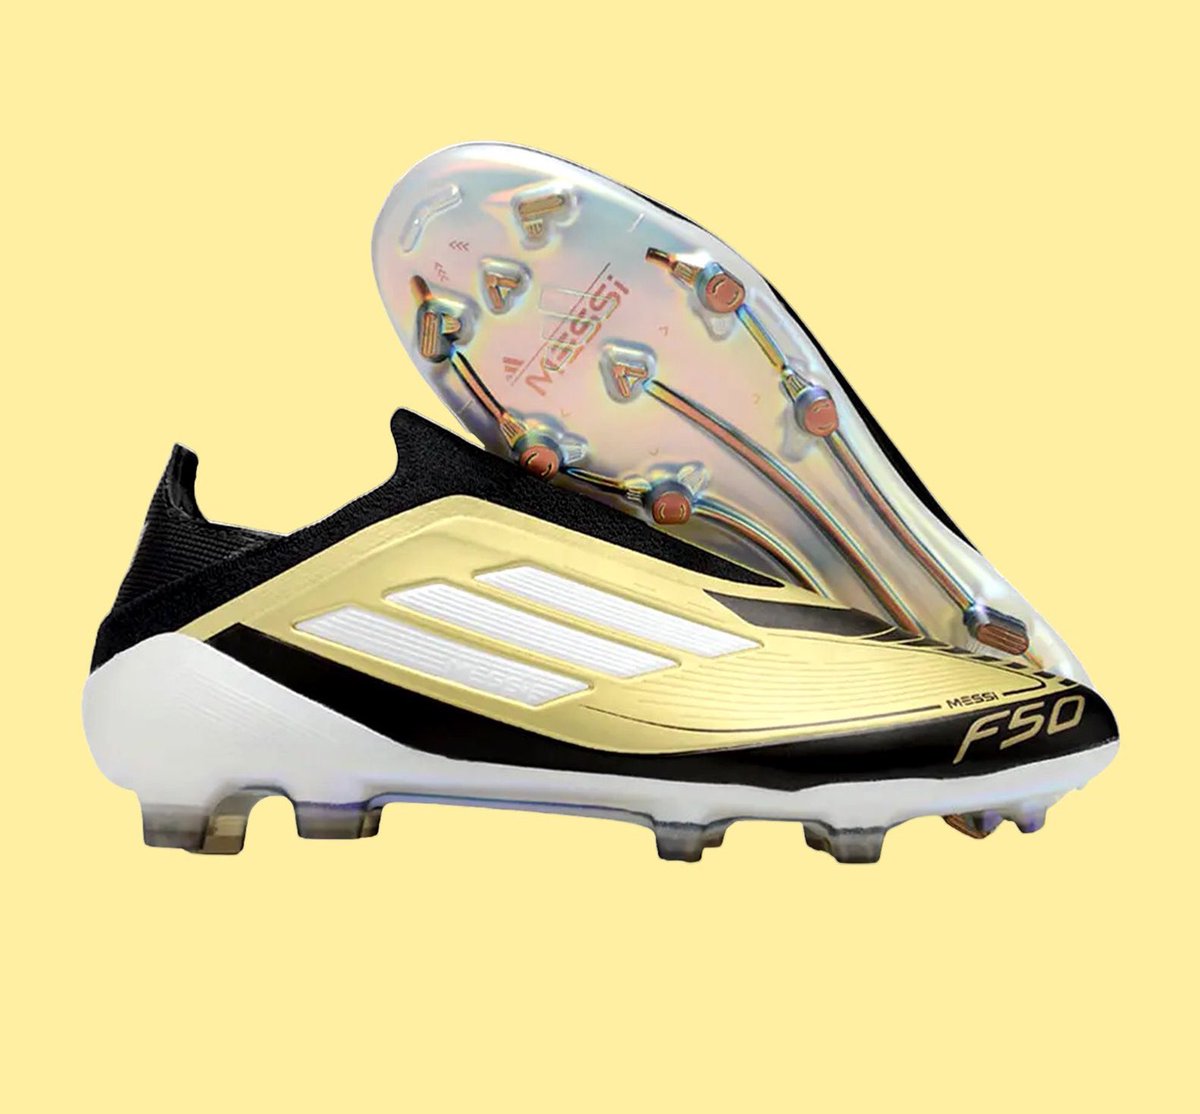 La nouvelle paire de crampons du GOAT Léo Messi pour la copa America.🐐🤩